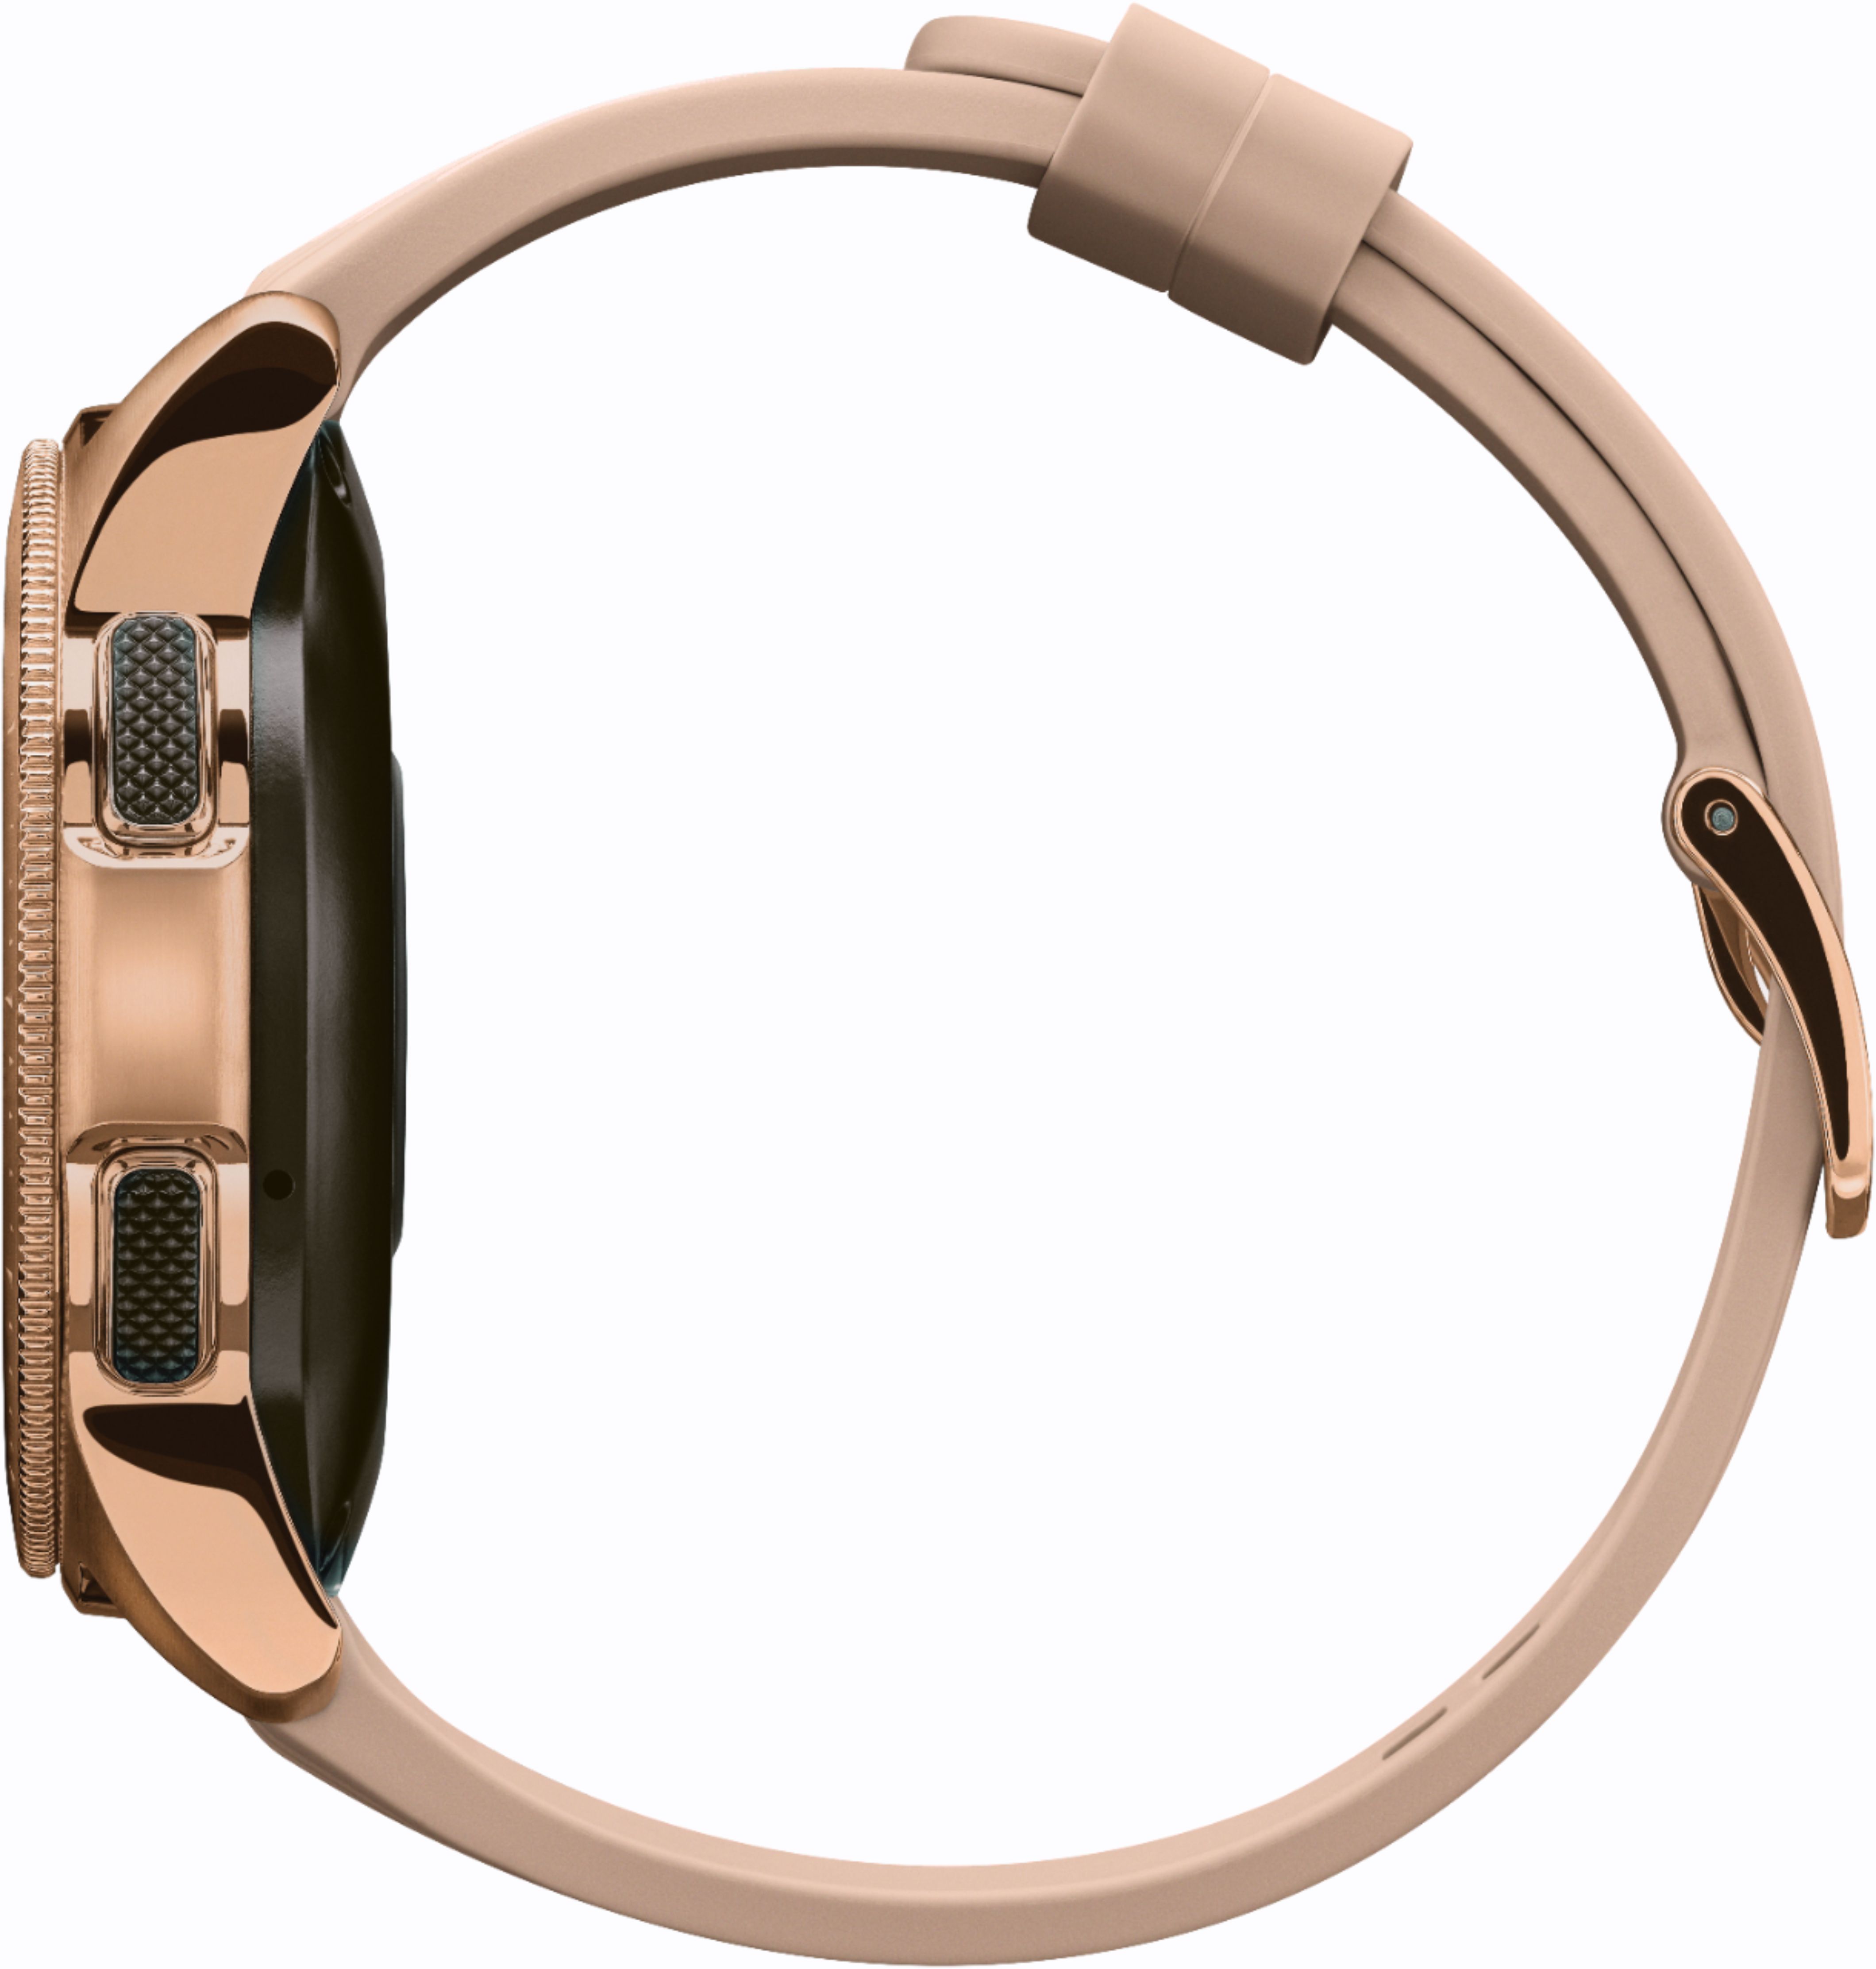 Best Buy Samsung Galaxy Watch Smartwatch 42mm Stainless Steel Rose Gold Sm R810nzdaxar